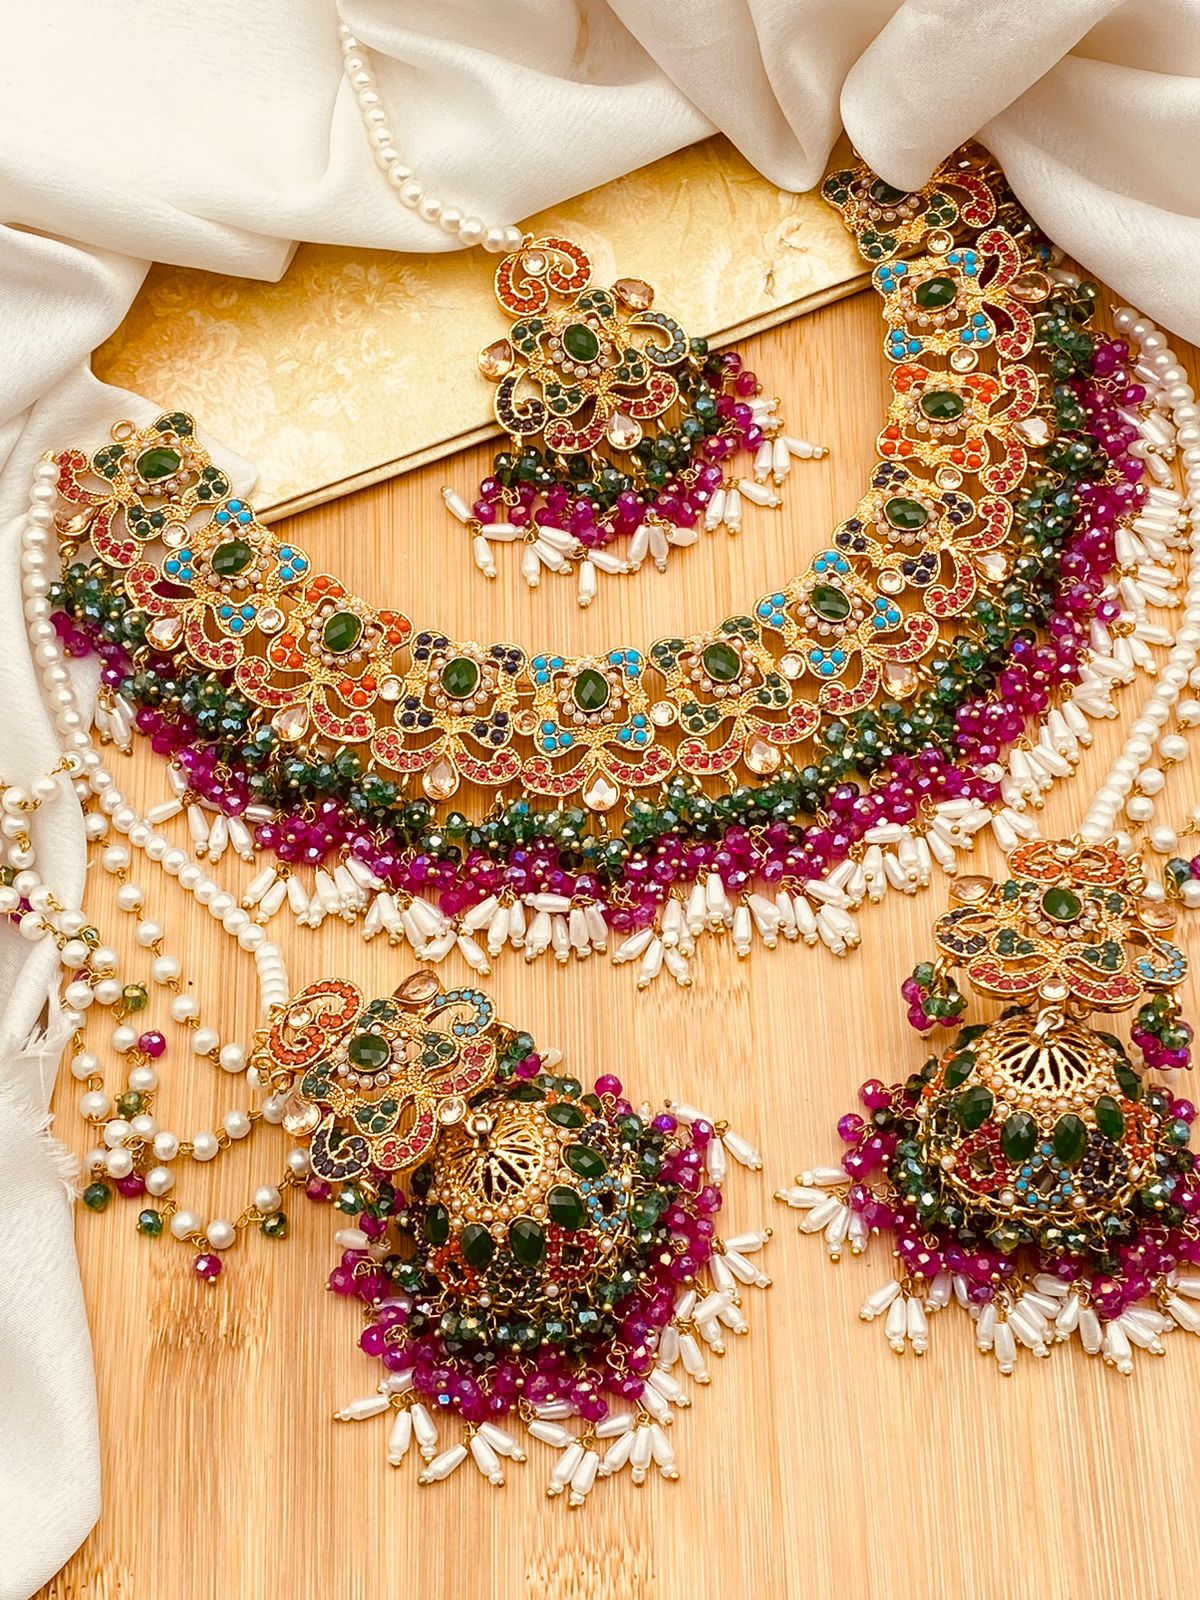 Kundan necklace set with jhumka – NAMASYA